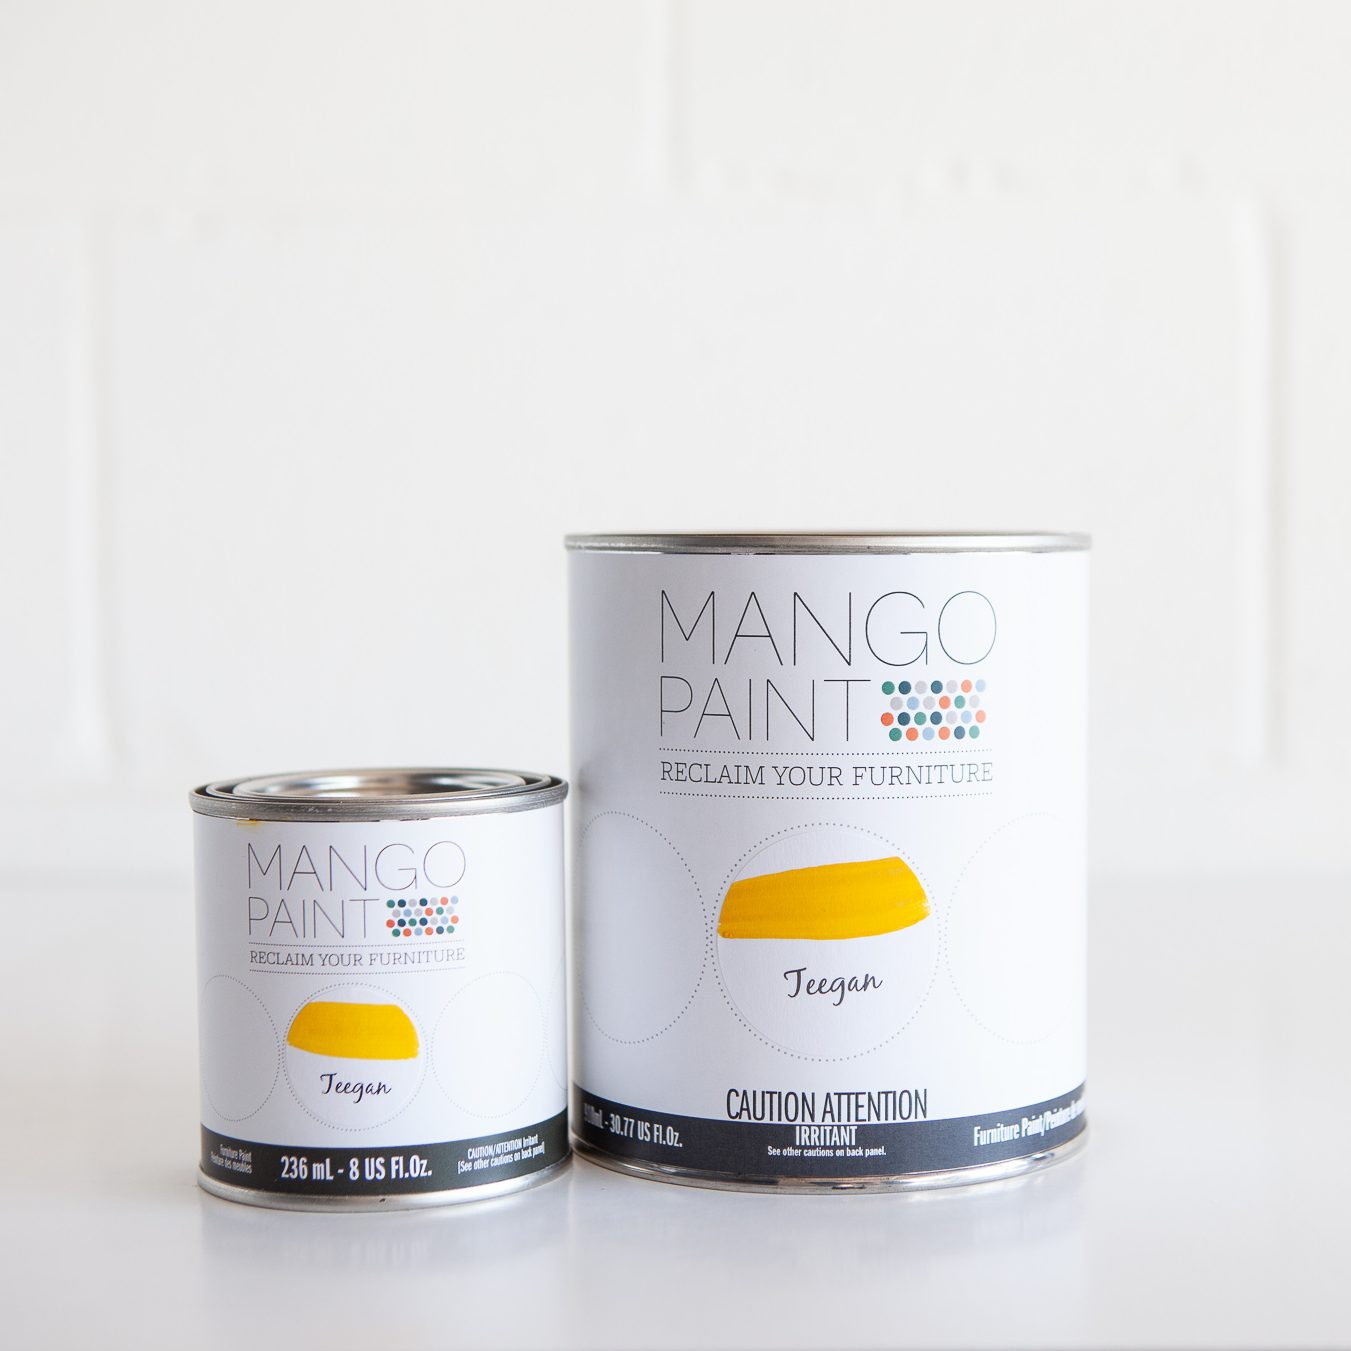 Mango Paint Teegan - Side view